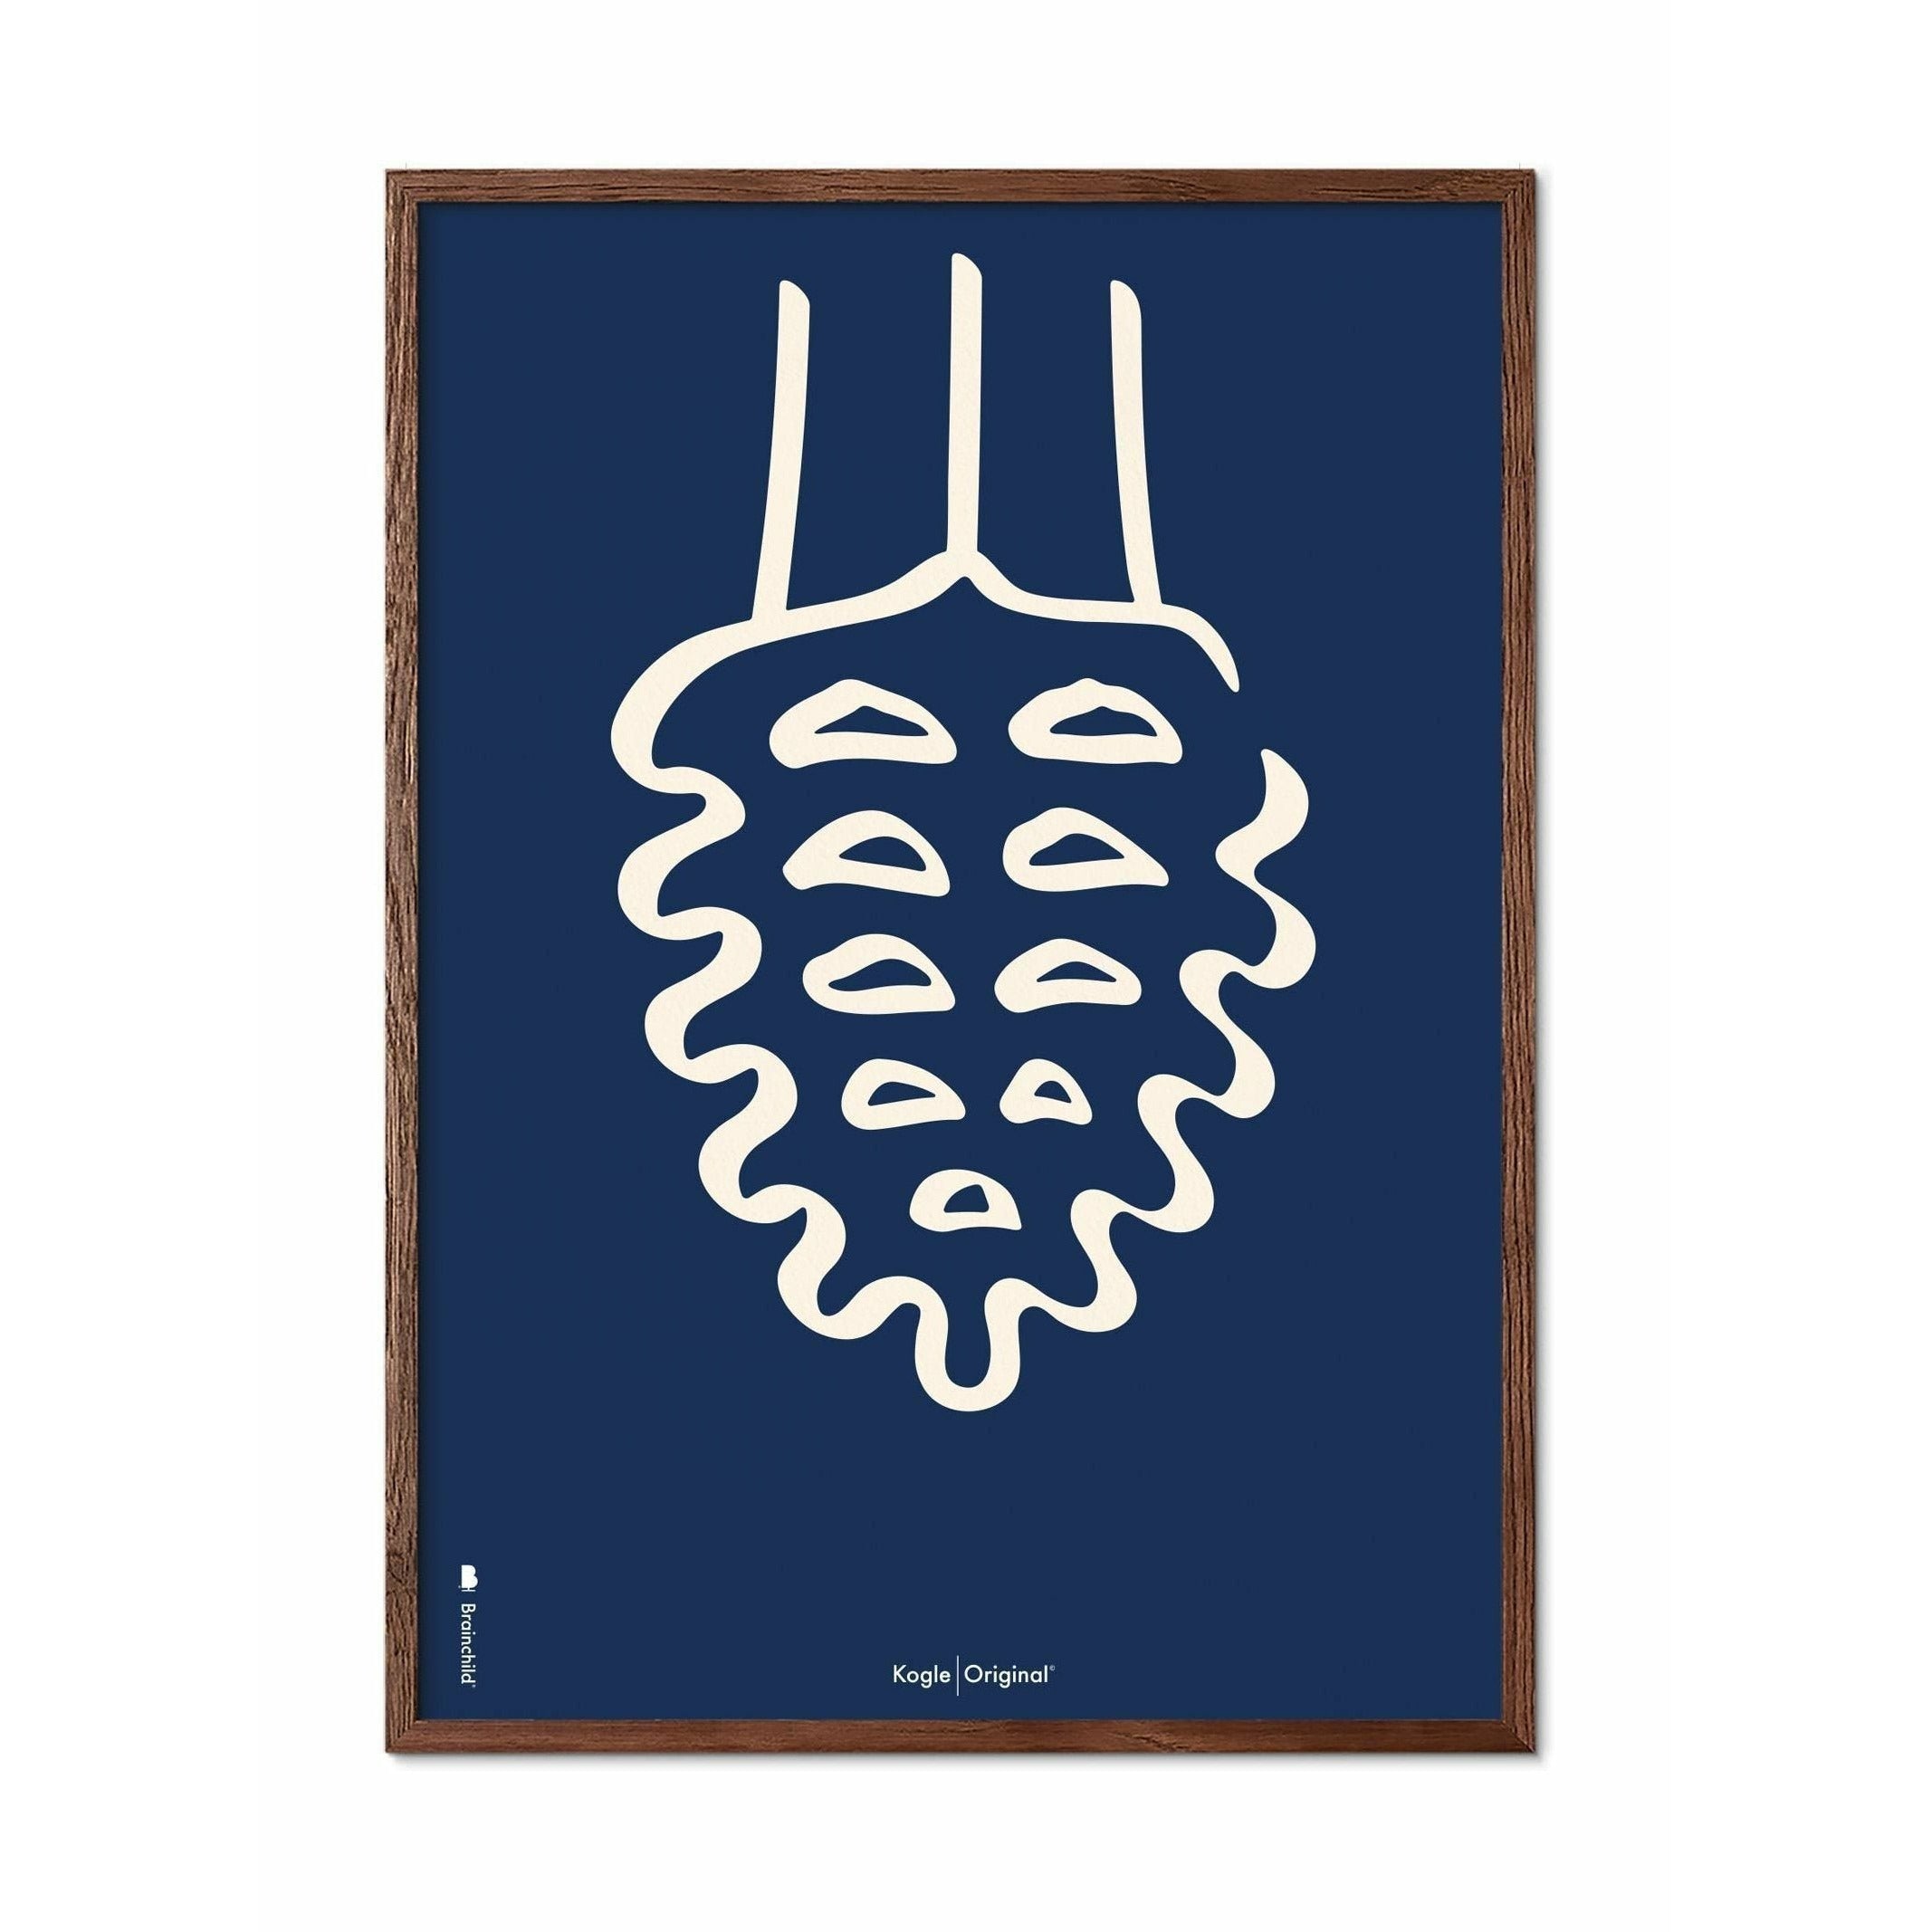 Brainchild Tallkotte Line Affisch, ram gjord av mörkt trä 70x100 cm, blå bakgrund